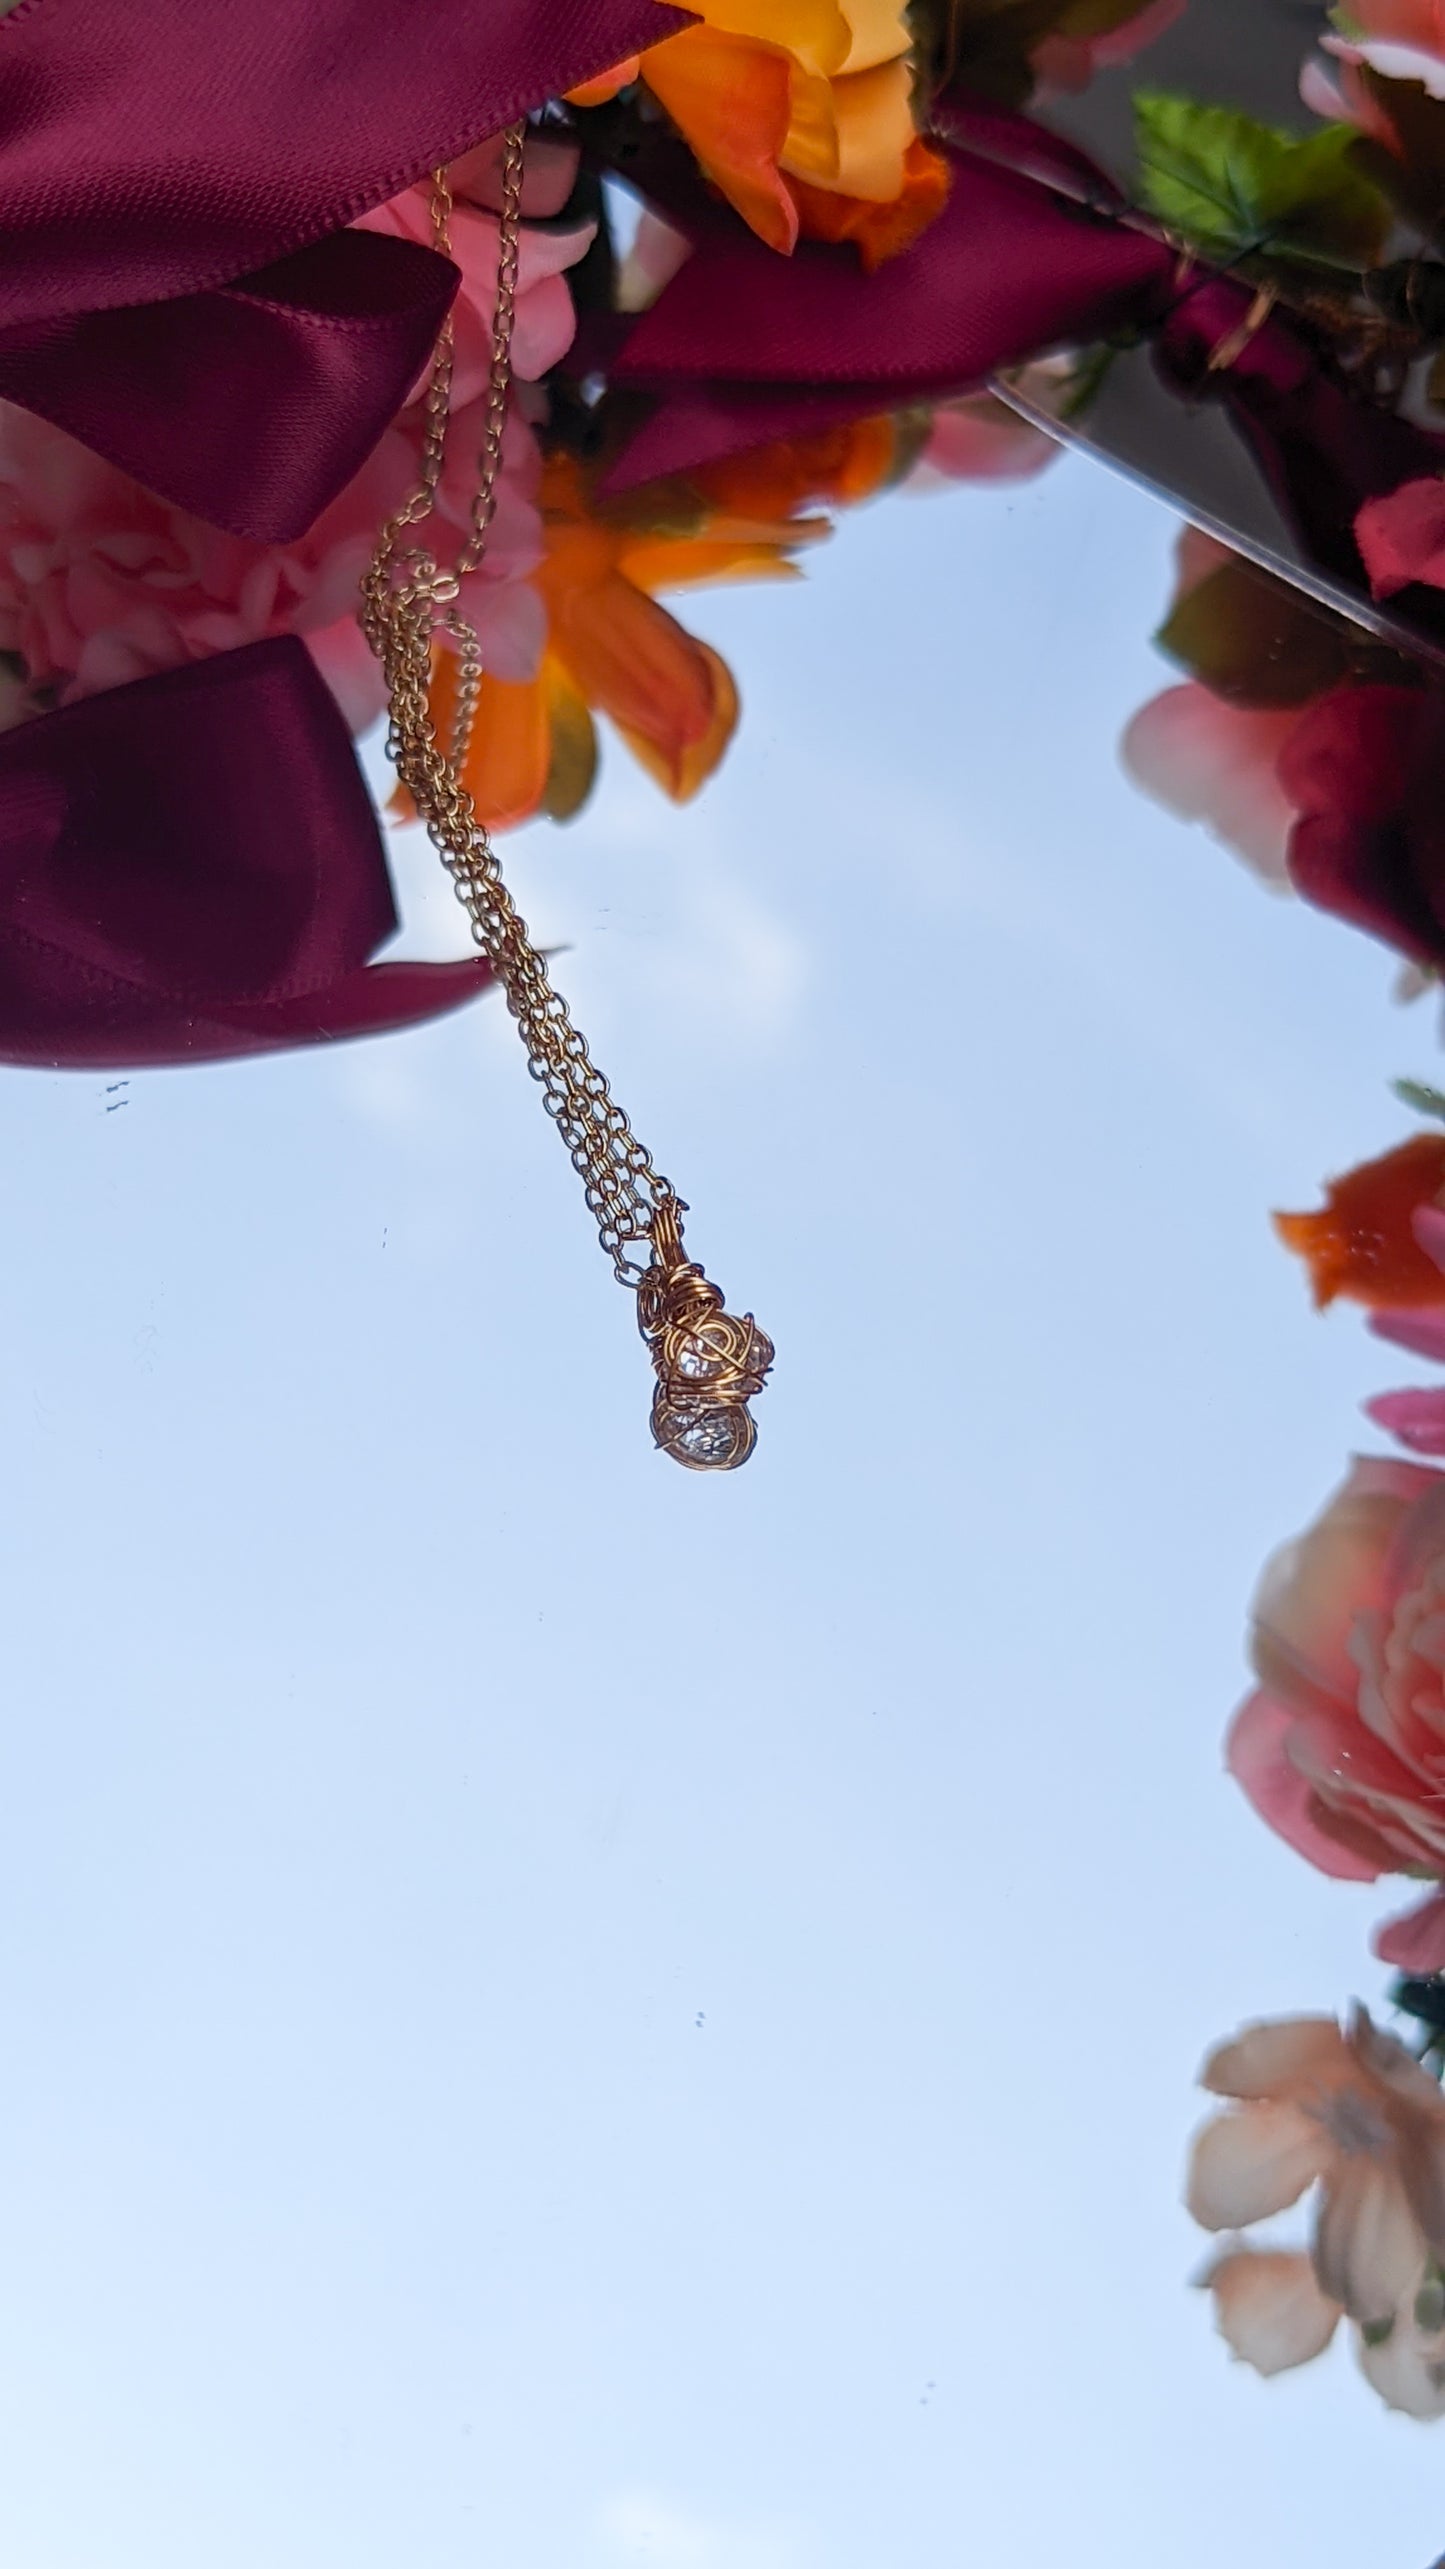 Stella - handmade zircon necklace in 14k gold